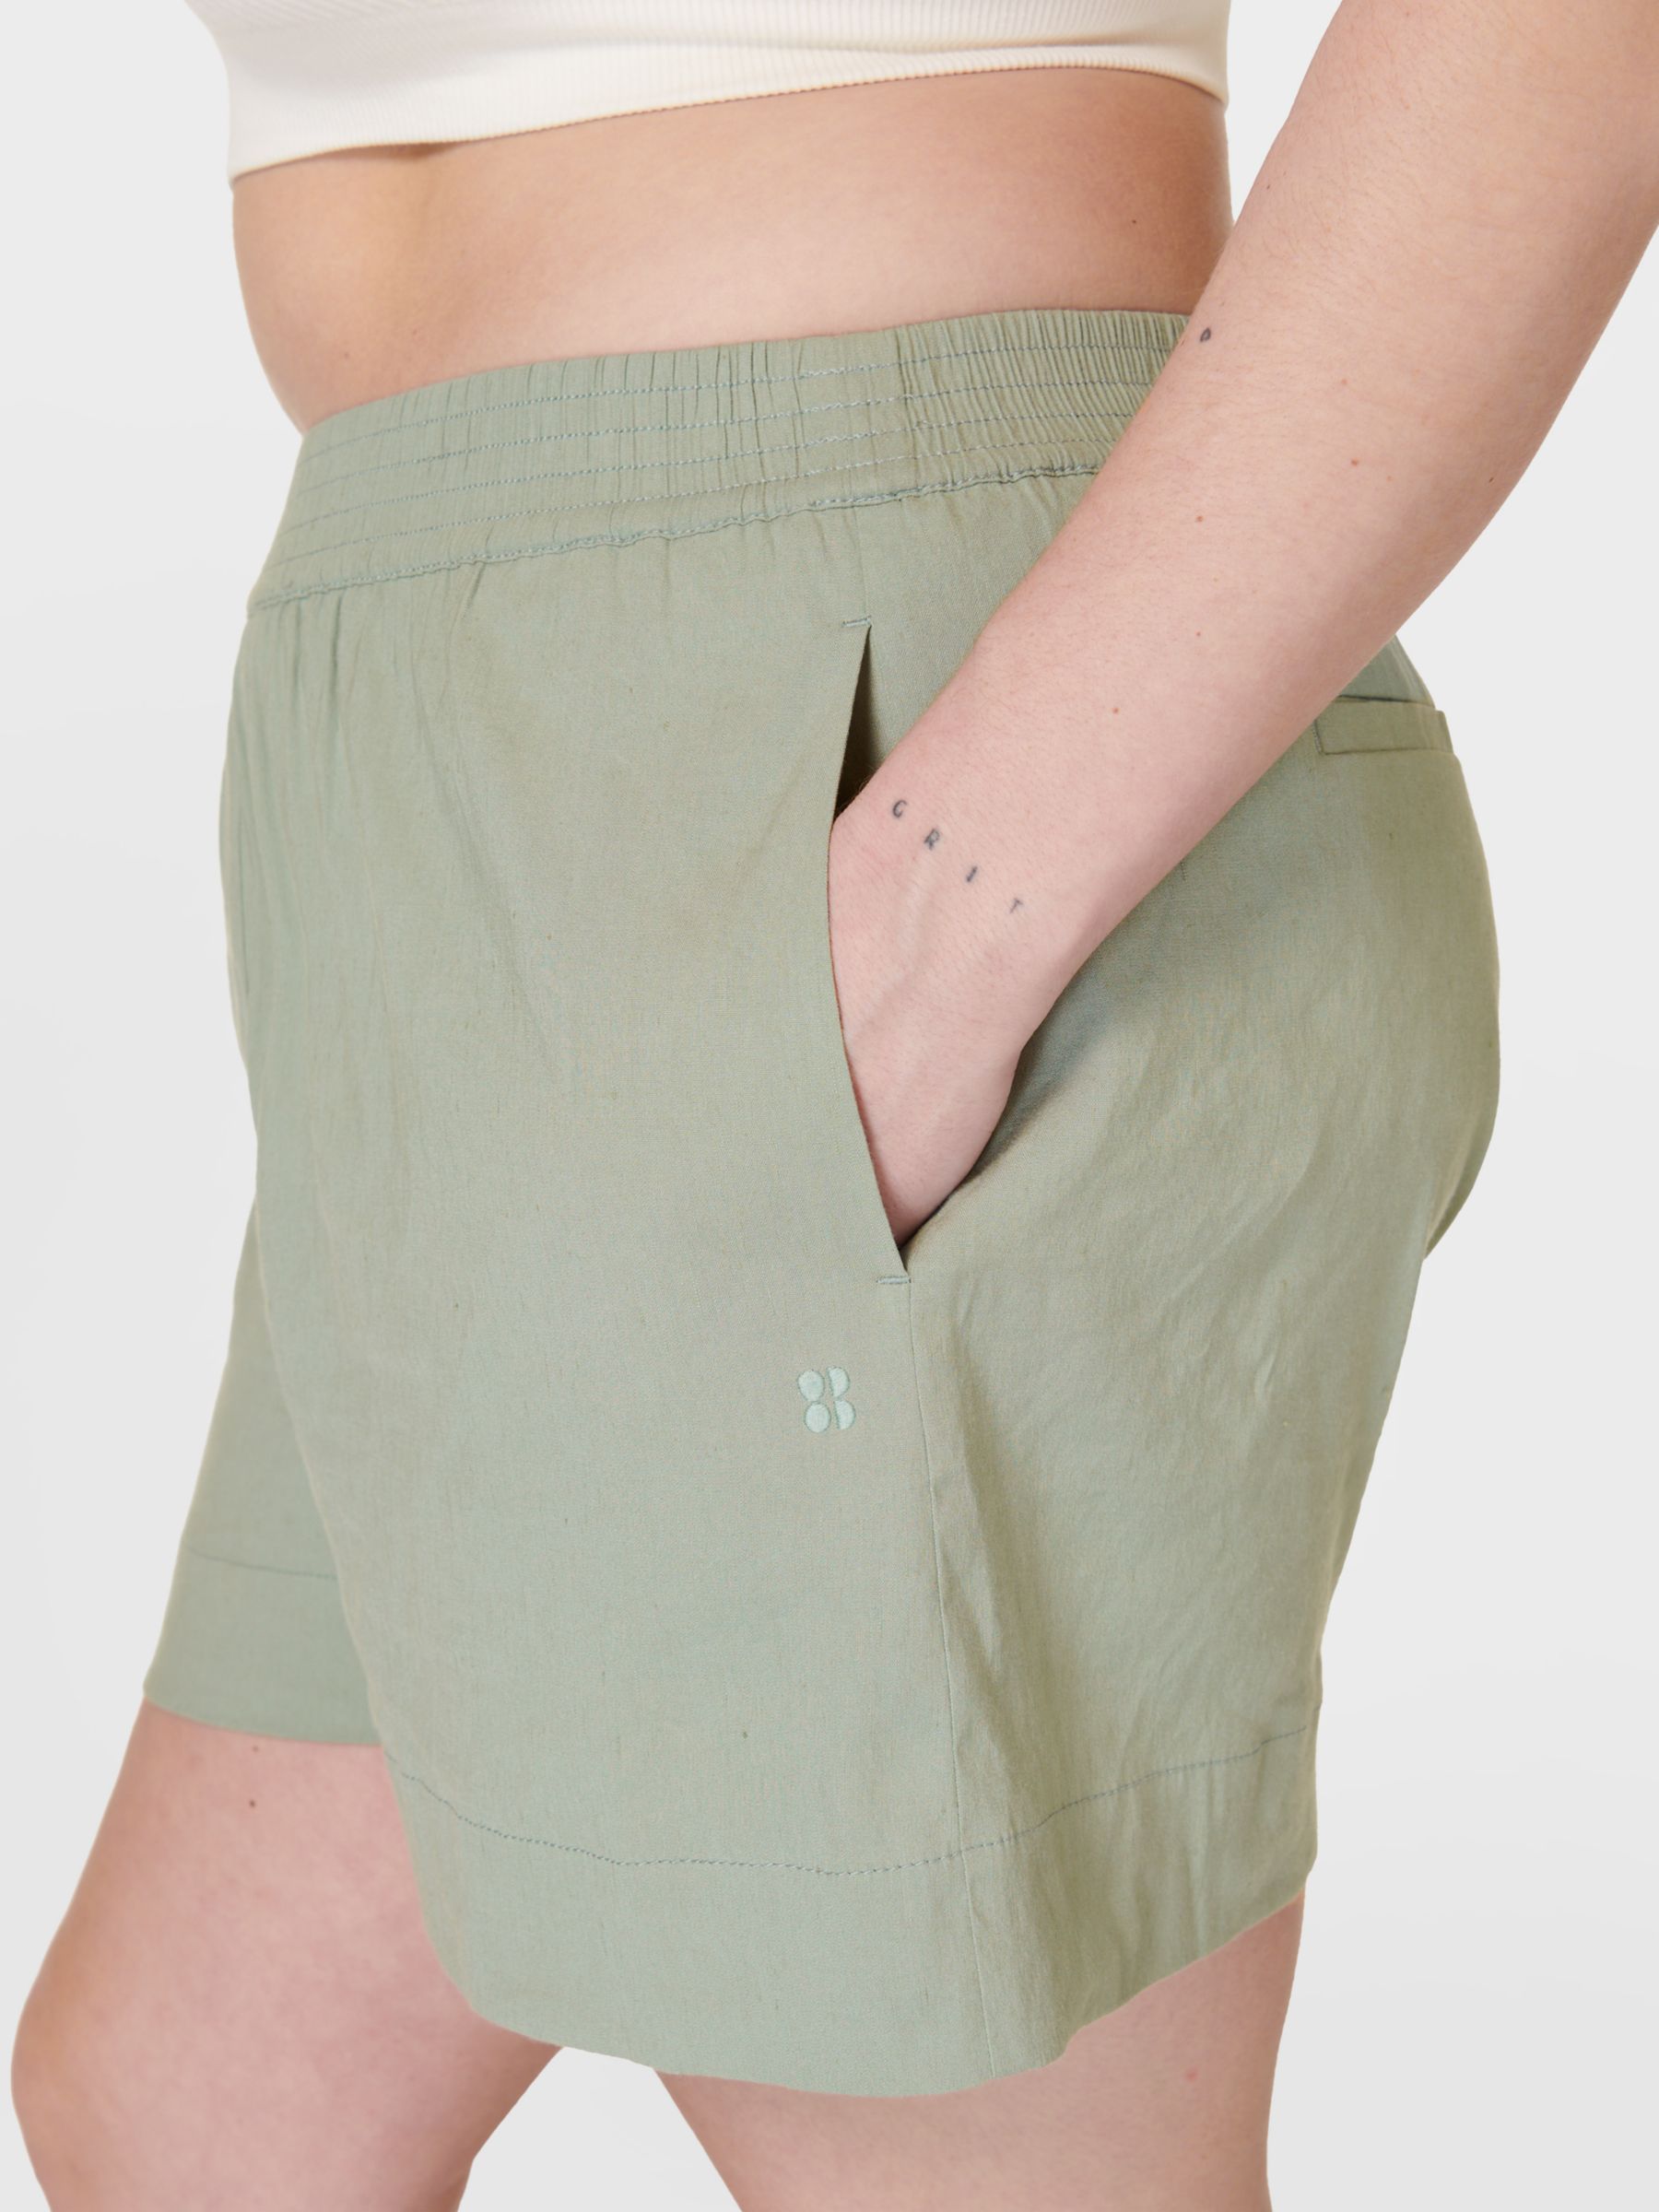 Sweaty Betty Summer Stretch Linen Blend Shorts, Savannah Green, XXS